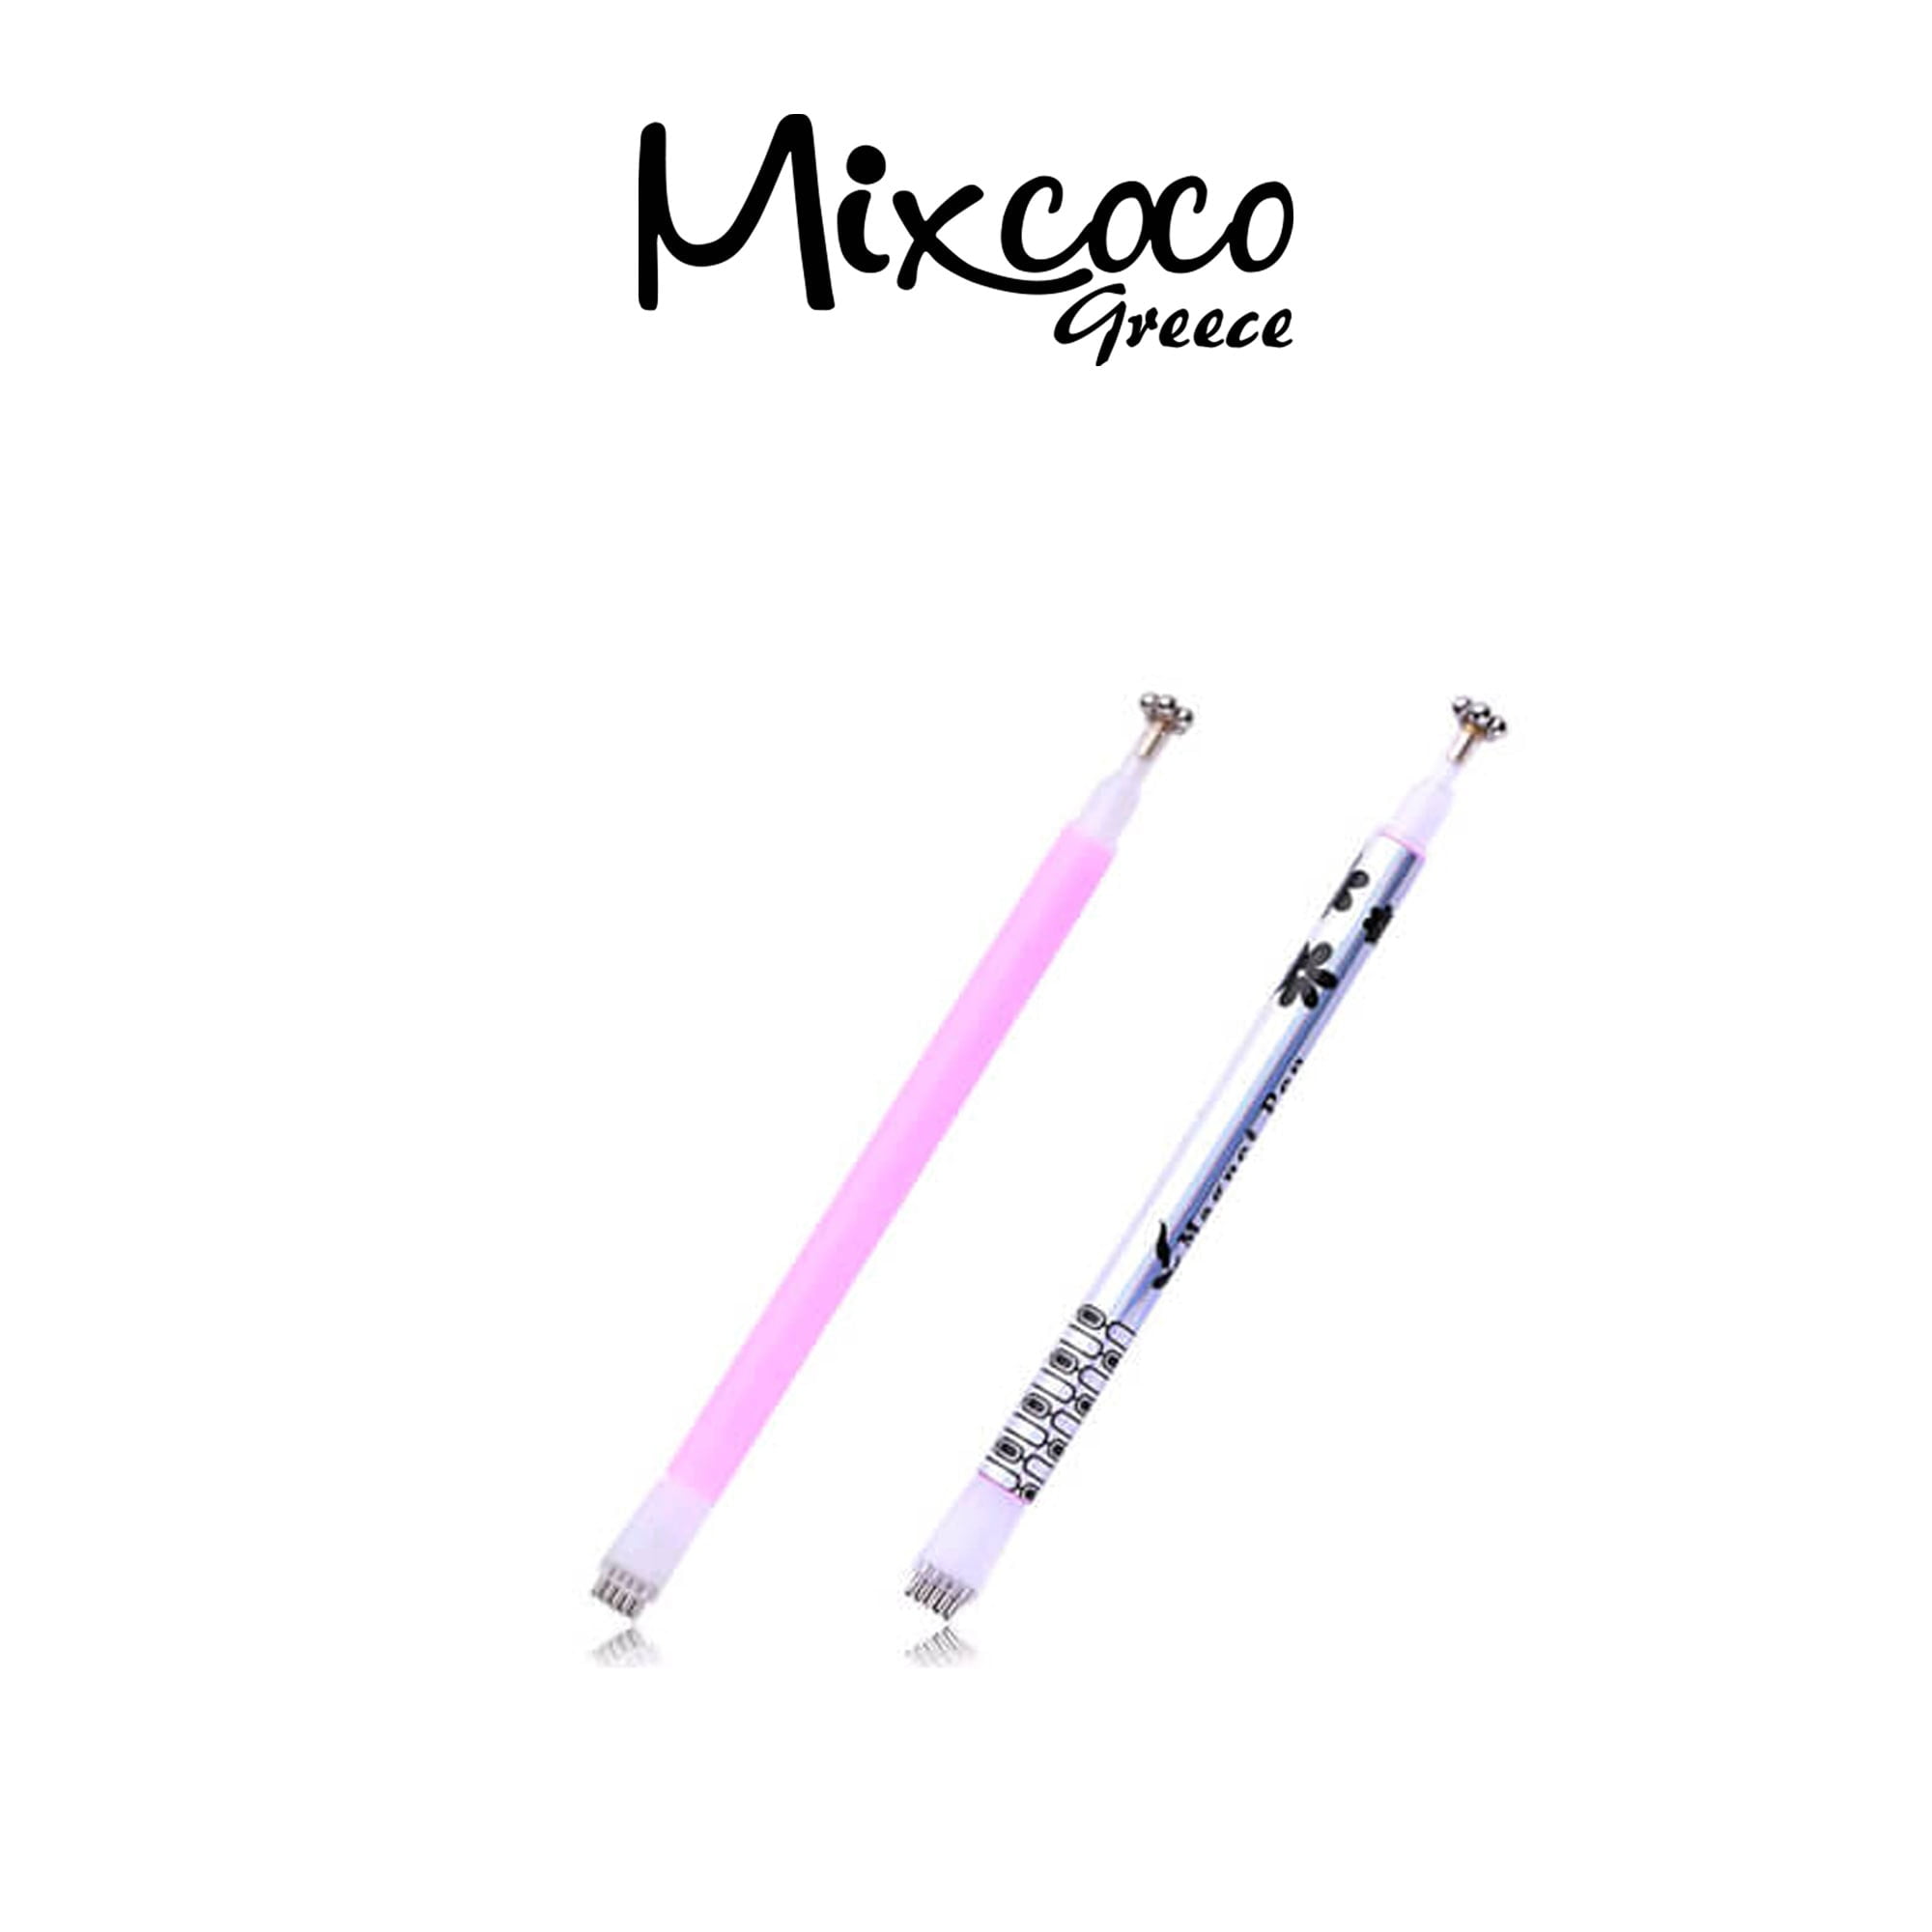 Μαγνήτης Mixcoco 2 σχεδίων